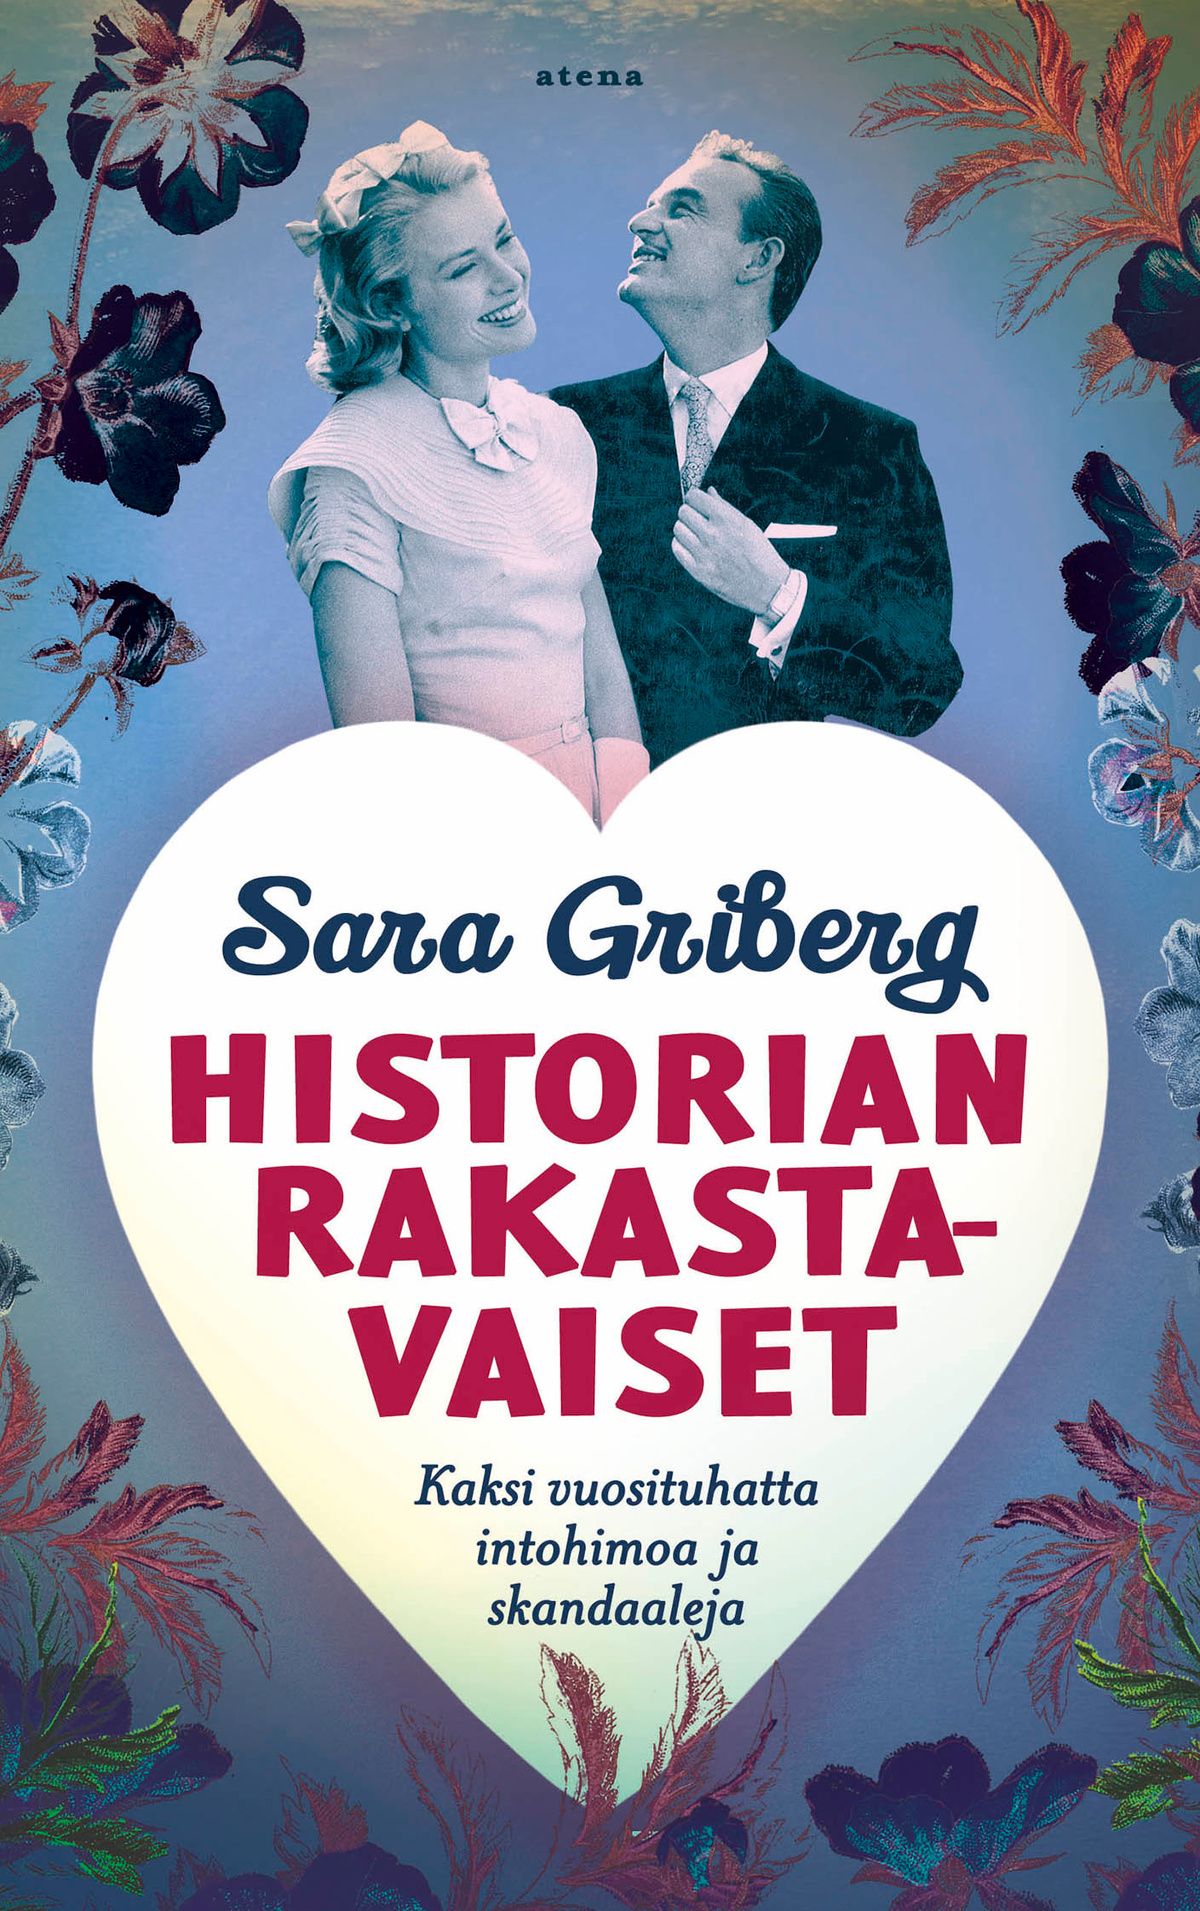 Sara Griberg : Historian rakastavaiset